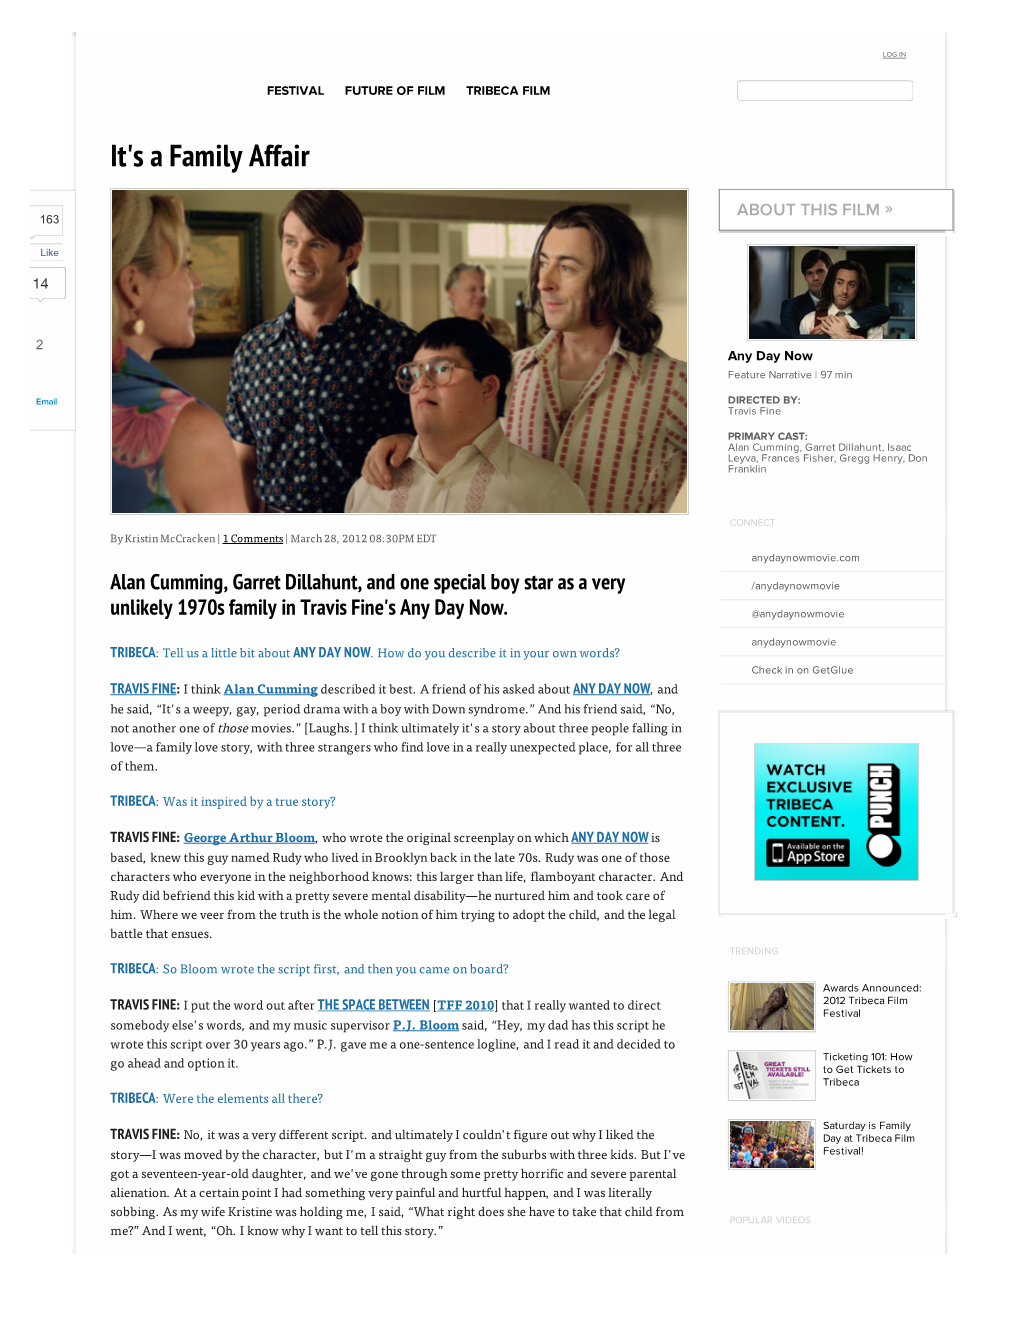 Tribecafilm.Com | News and Features | It's a Family Affair